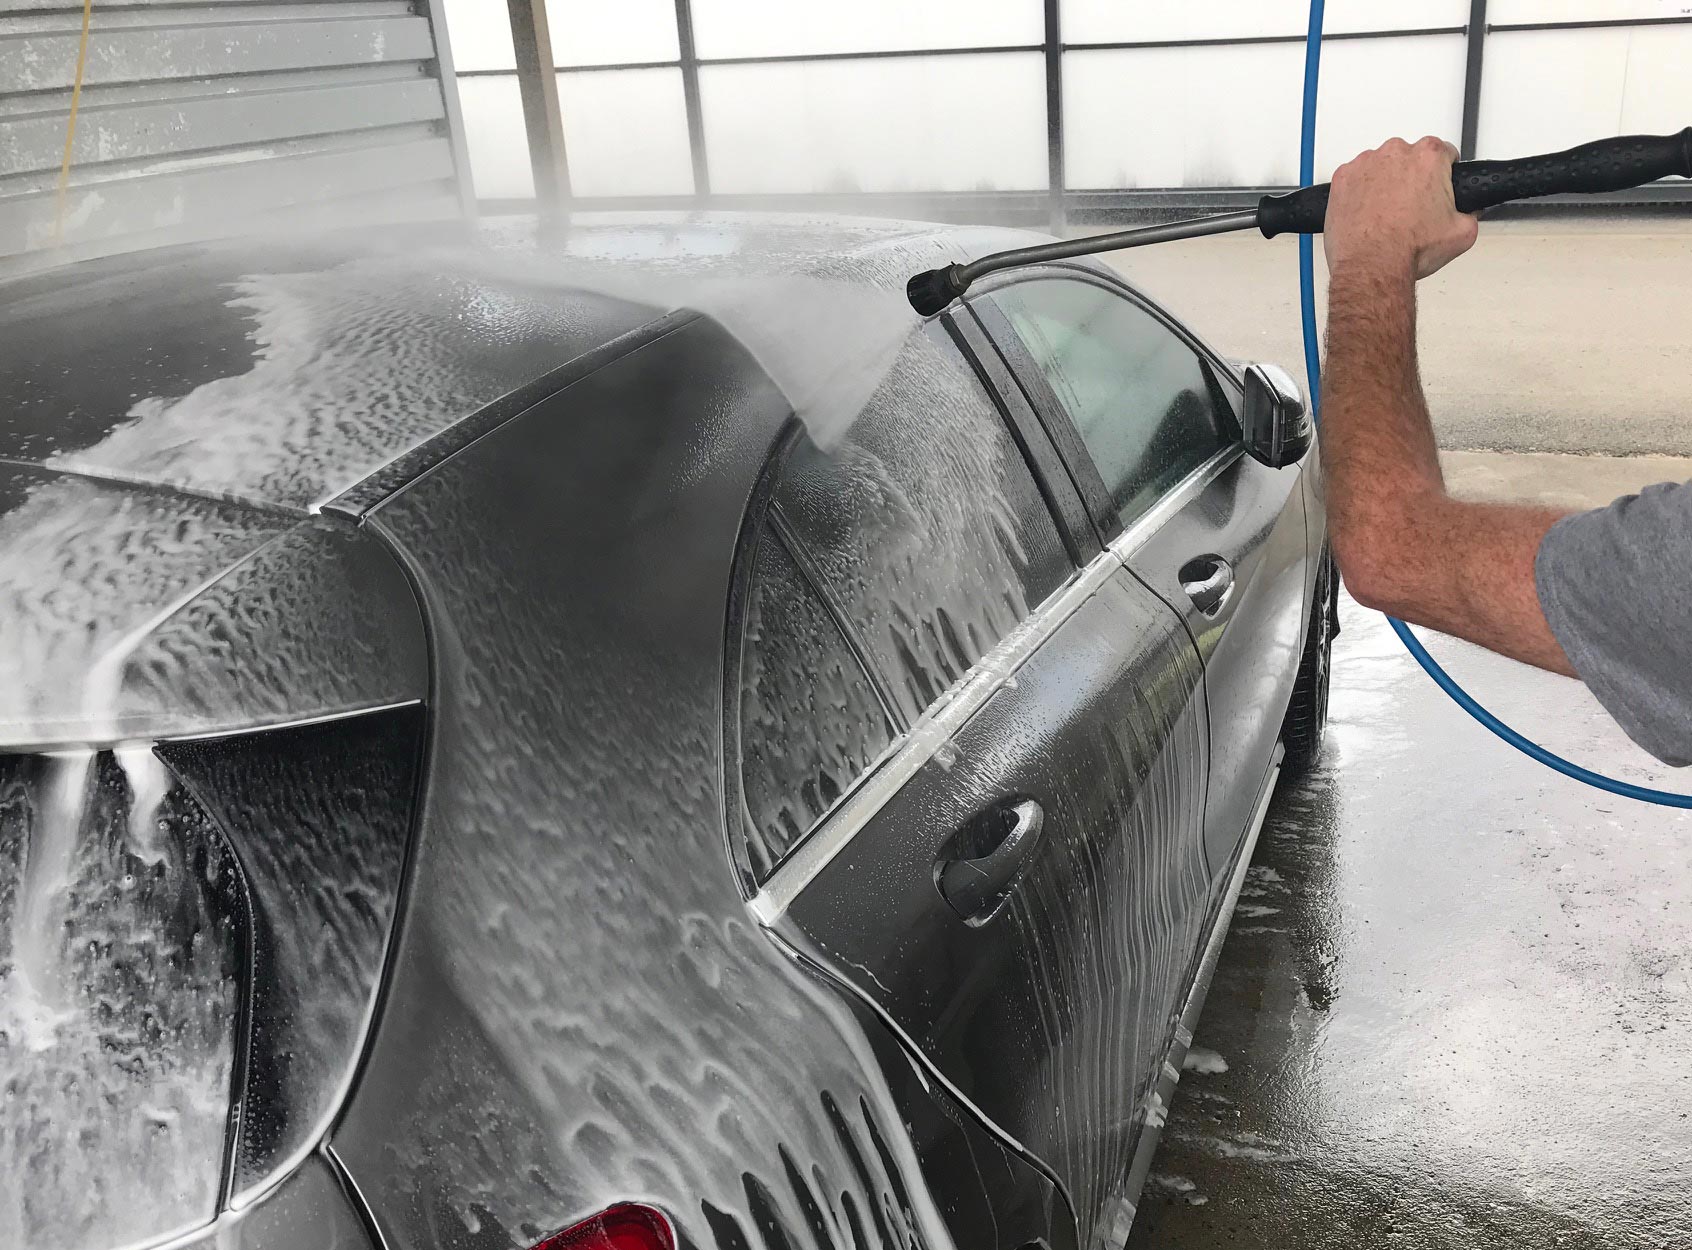 appuyer sur le bouton sous le manche pour avoir une pression d'eau plus forte pour nettoyer votre voiture